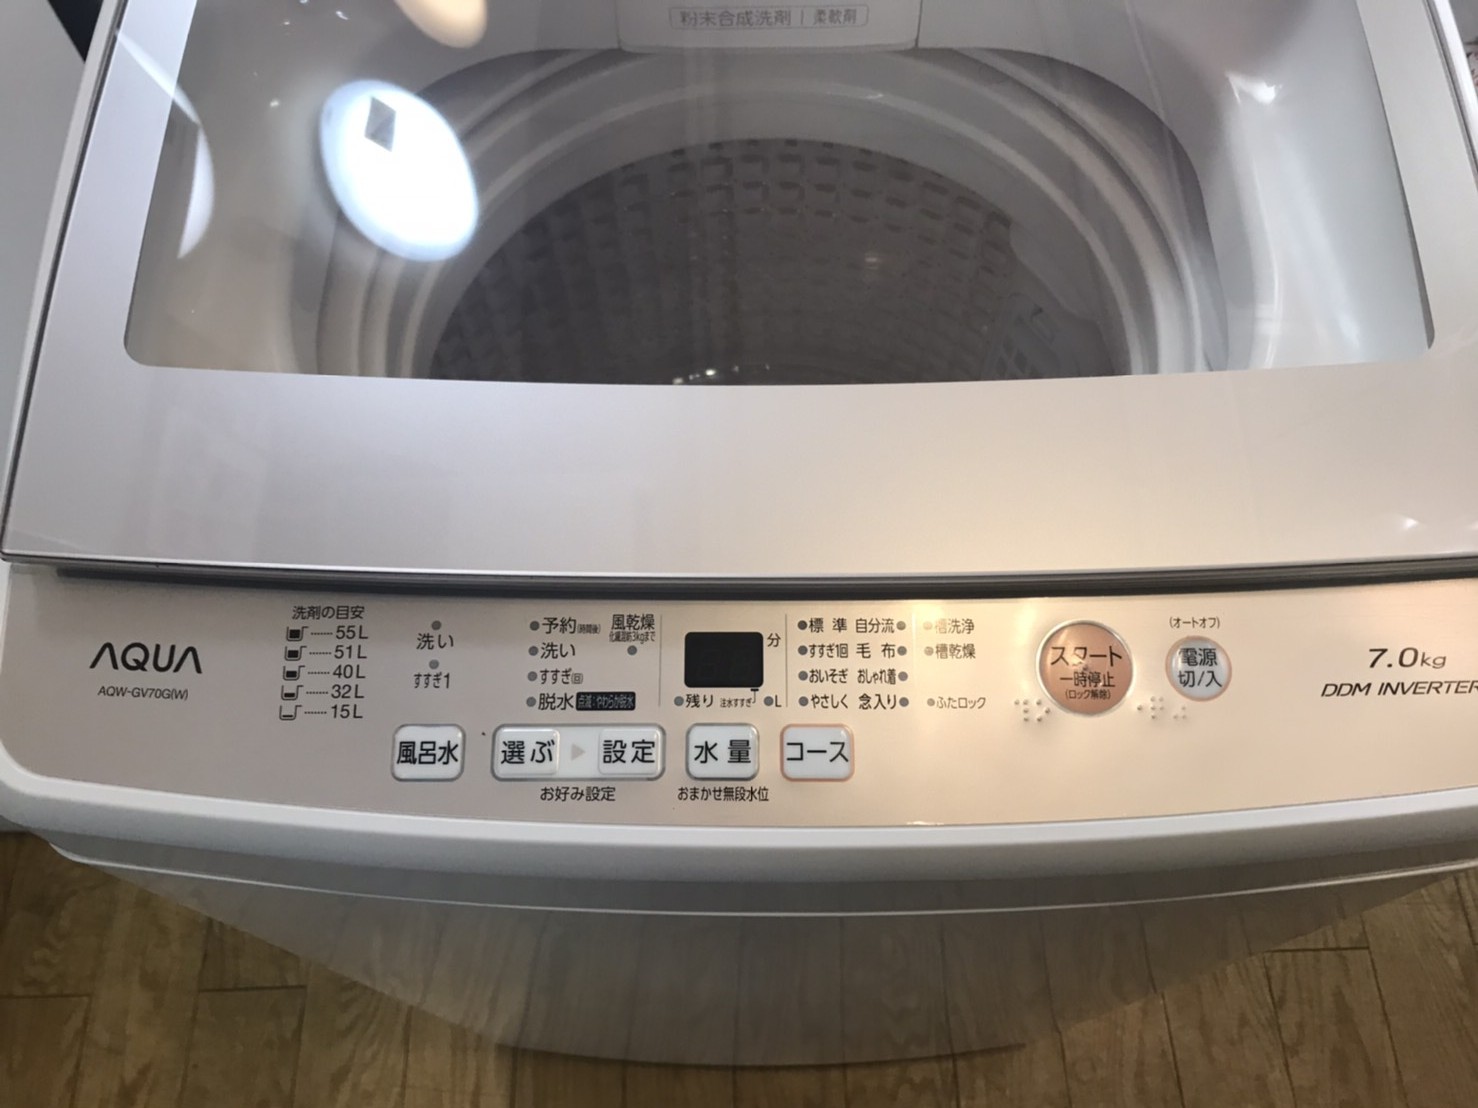 AQUA AQW-GV700E(W)  洗濯機　7.0kg   明日までの出品